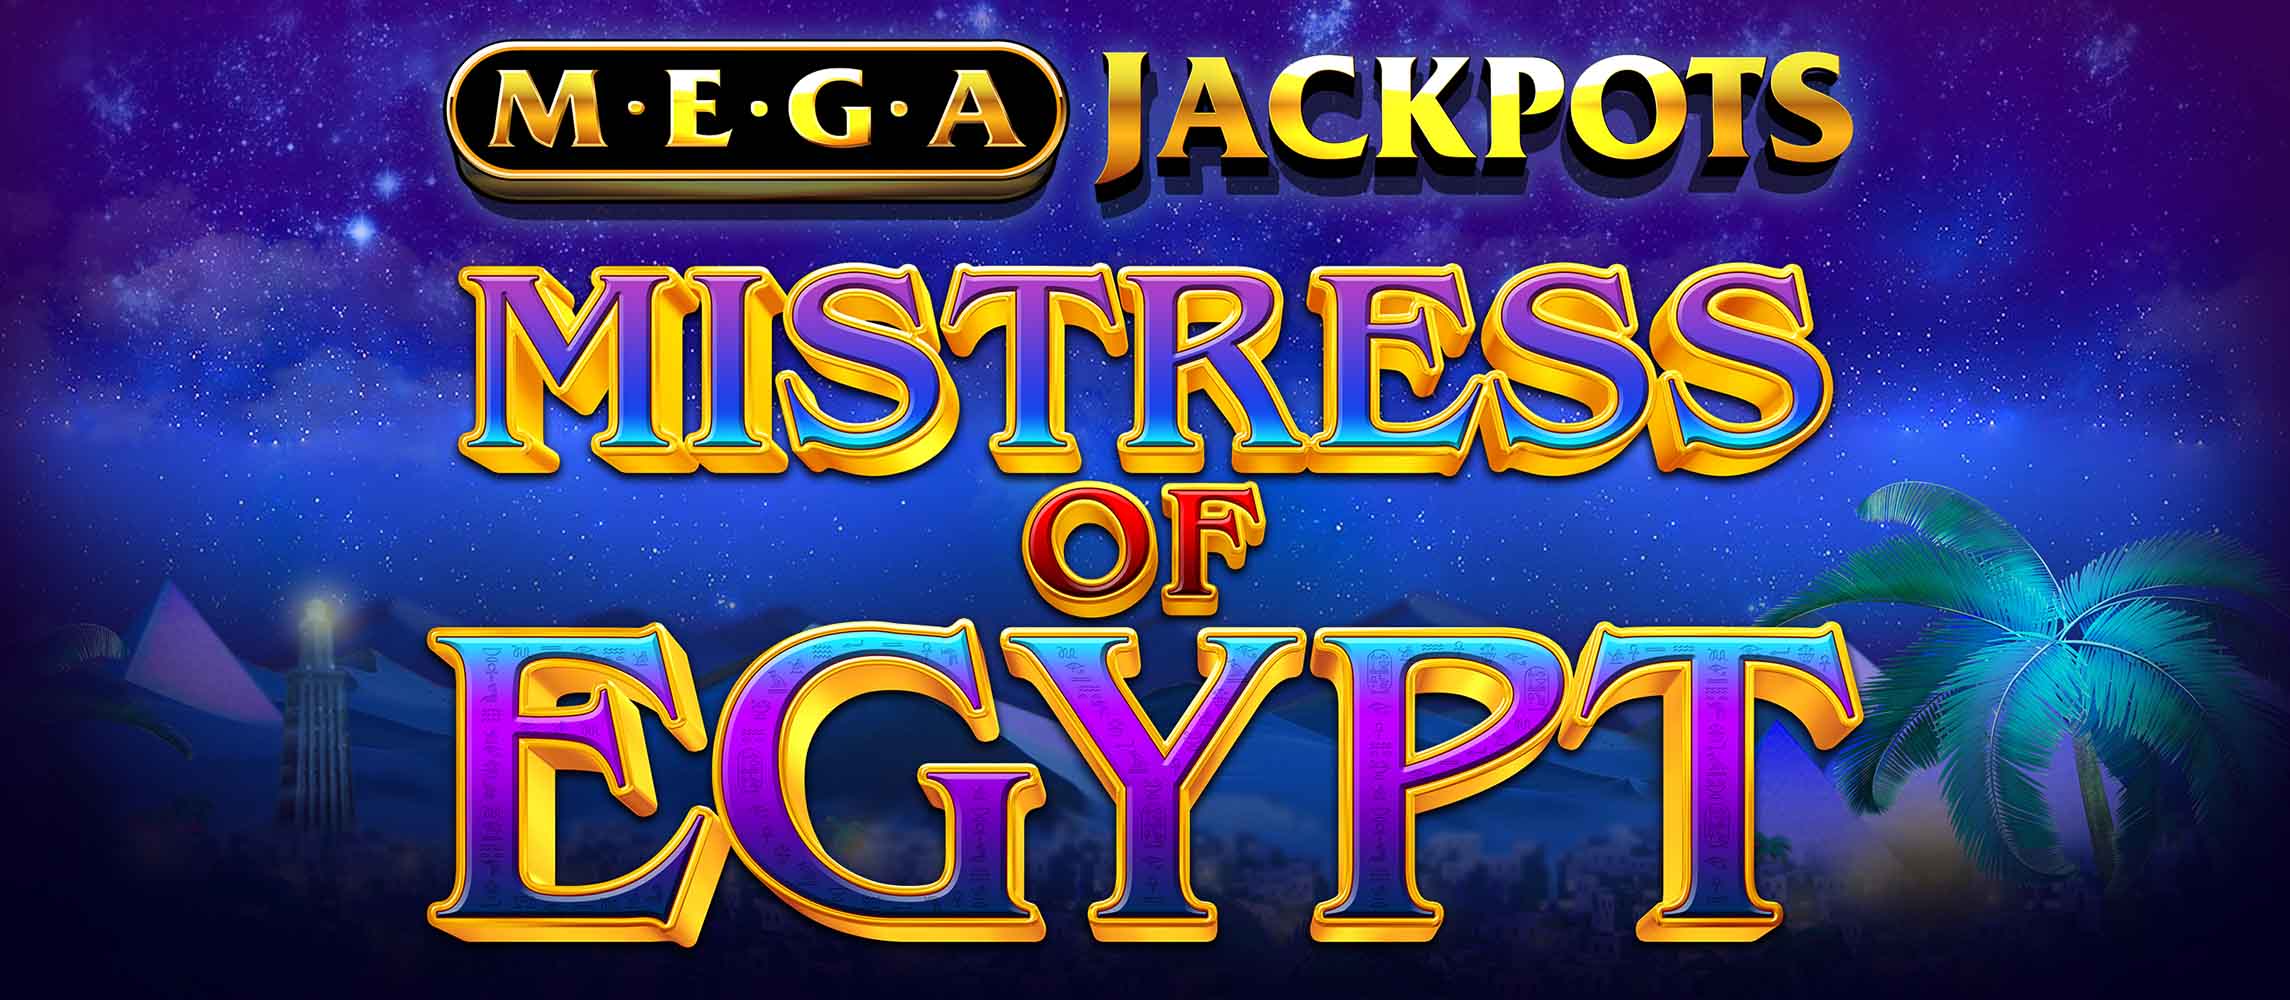 Mistress of Egypt MegaJackpots by IGT